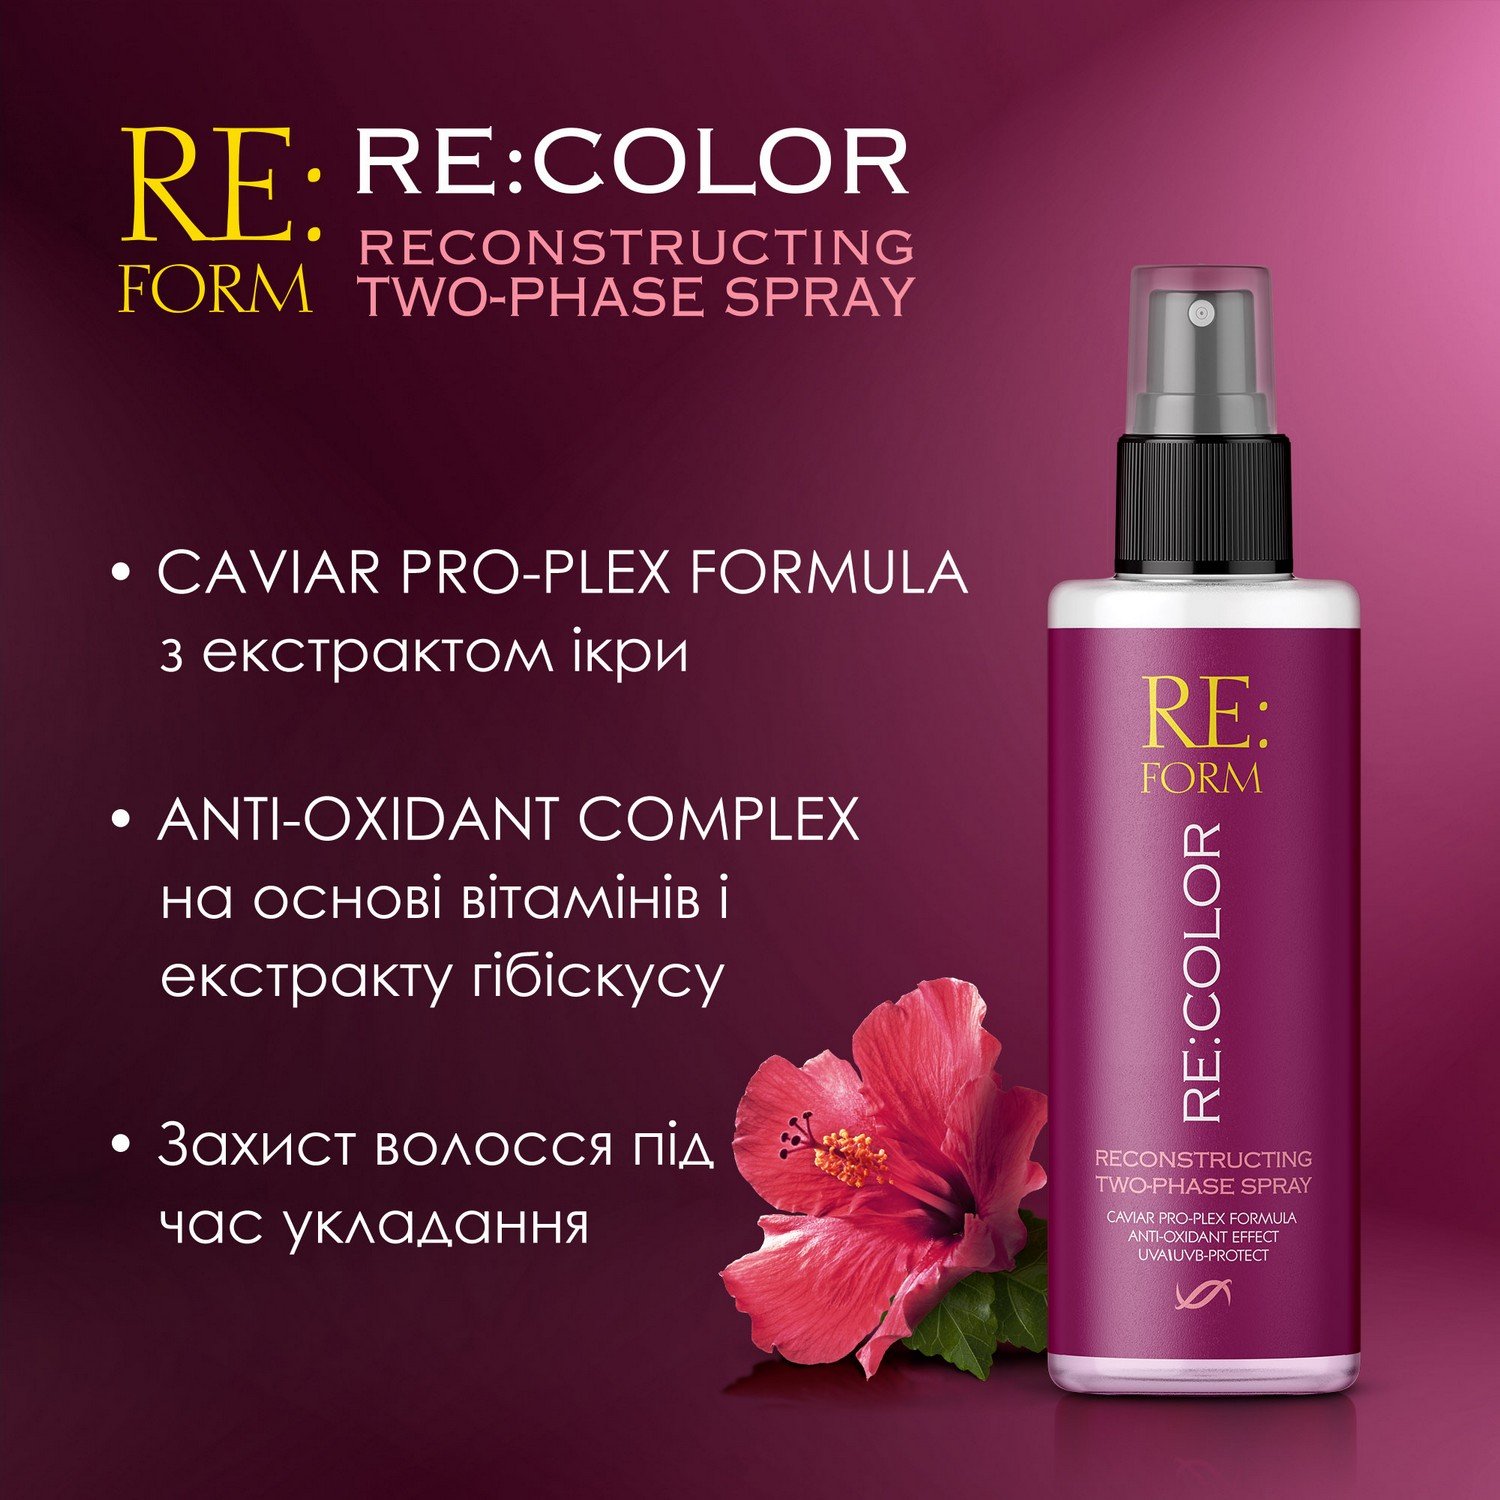 Реконструюючий двофазний спрей Re:form Re:color Збереження кольору та відновлення фарбованого волосся, 200 мл - фото 5